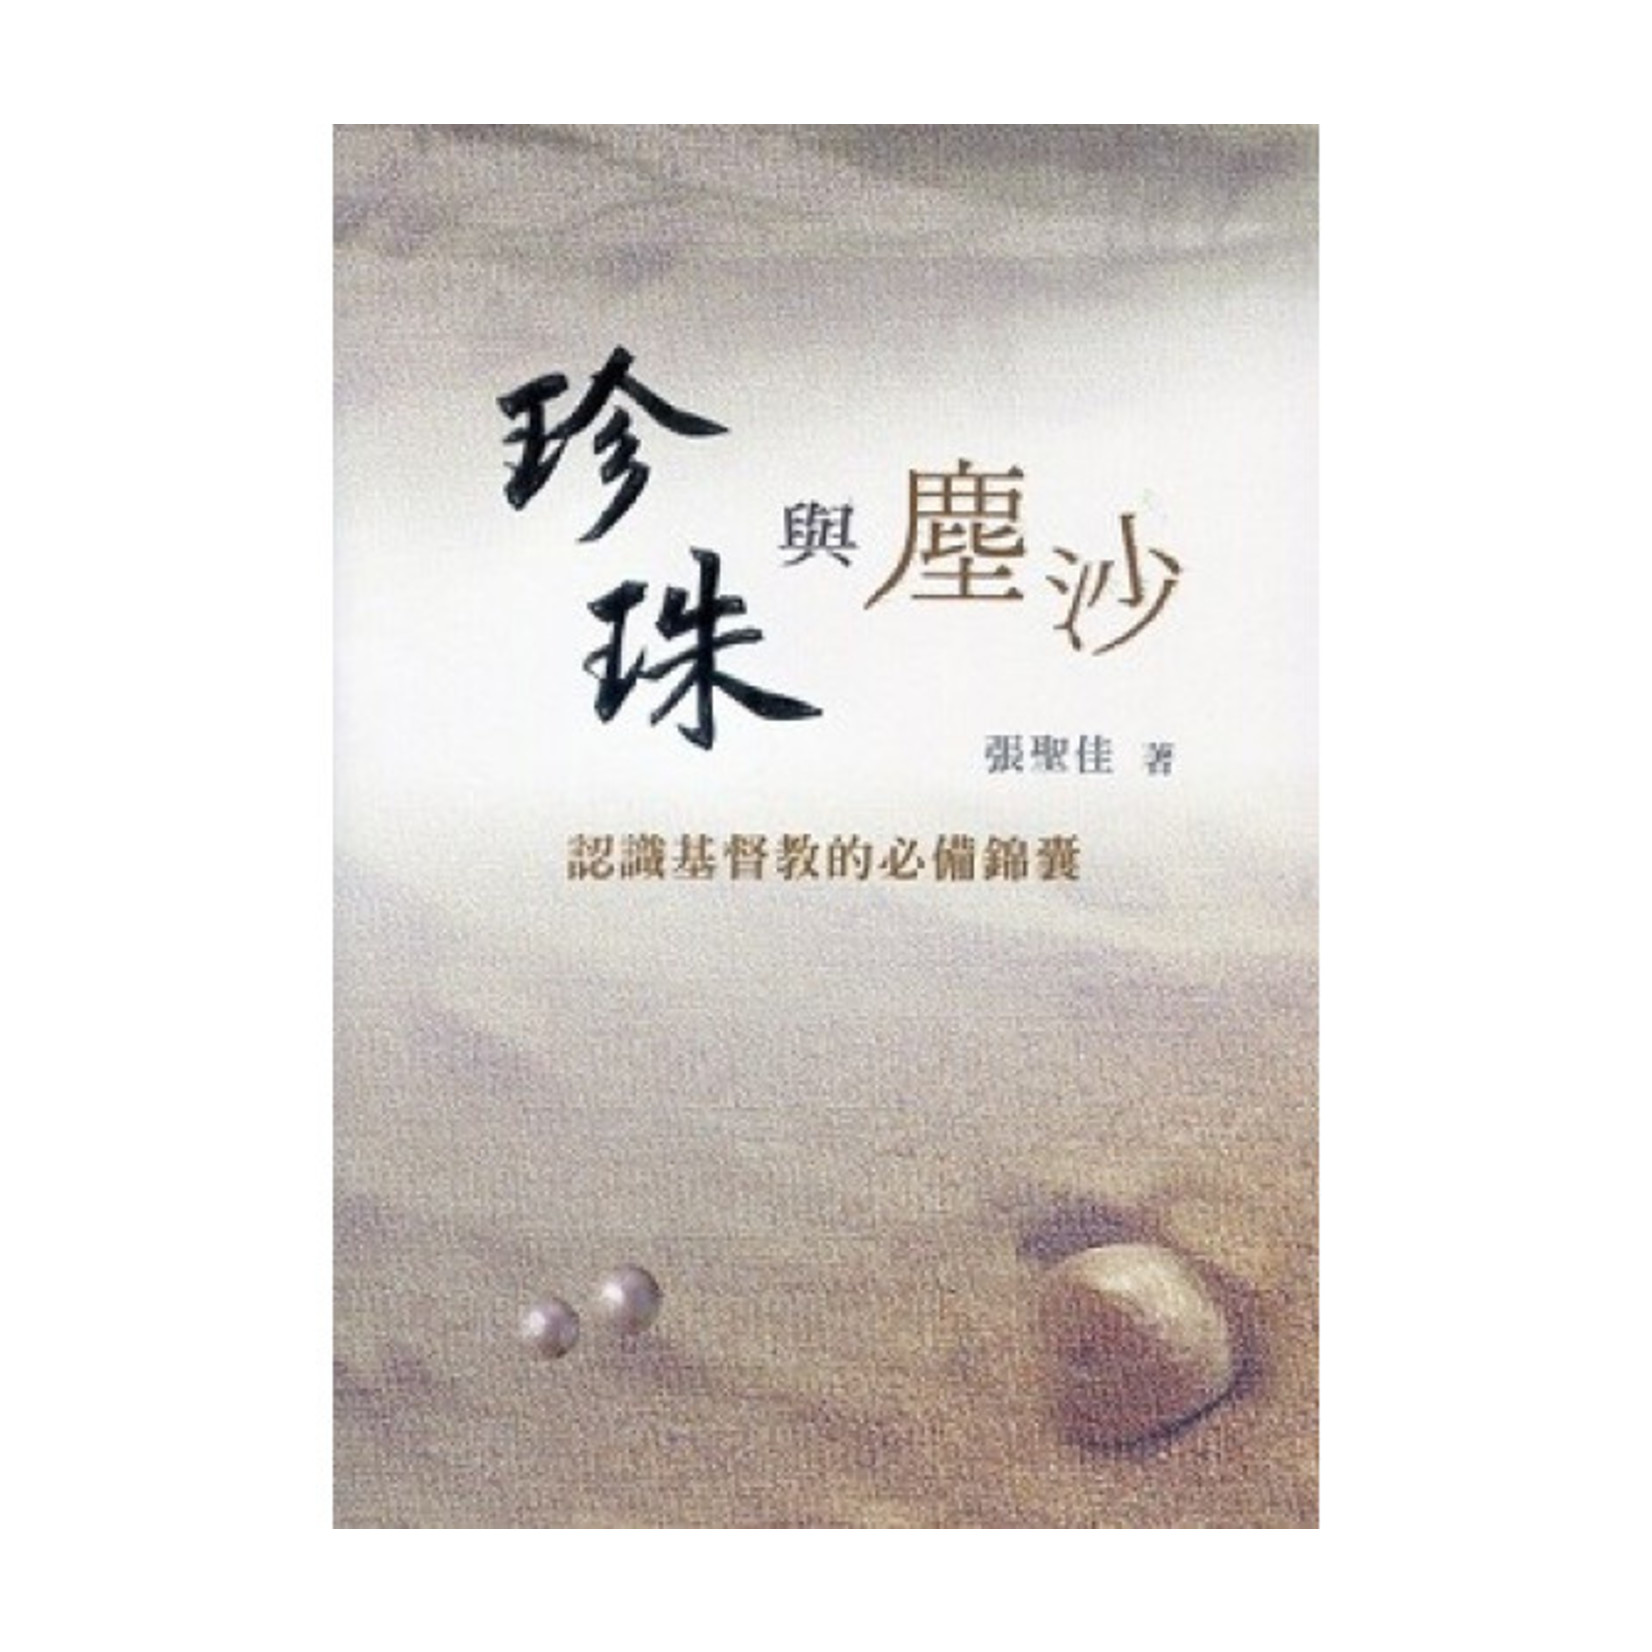 中國主日學協會 China Sunday School Association 珍珠與塵沙：認識基督教的必備錦囊